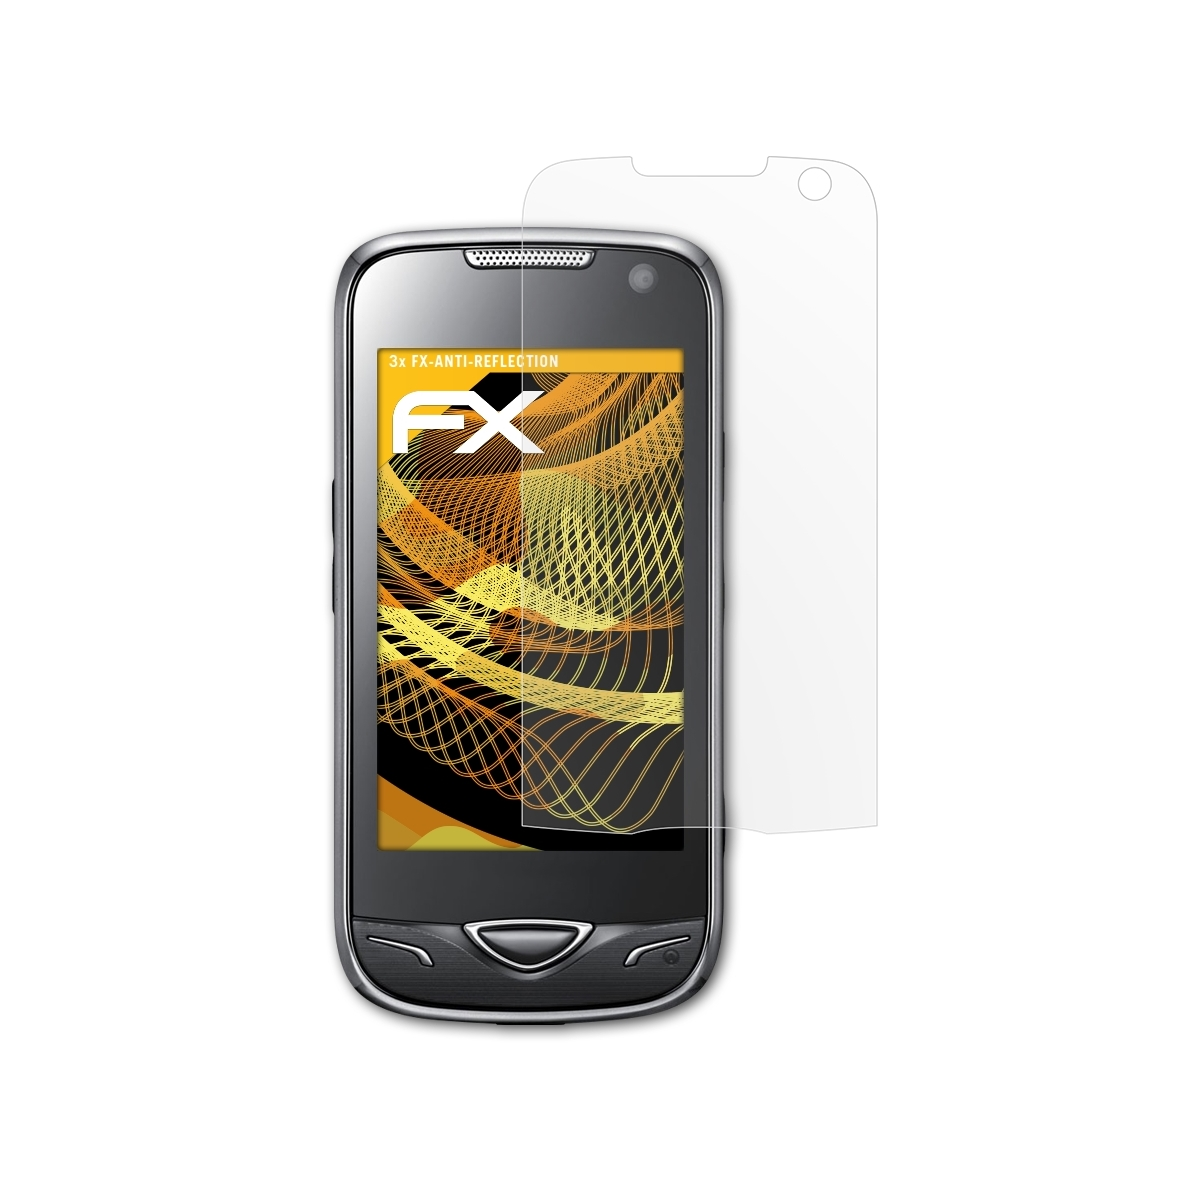 ATFOLIX 3x FX-Antireflex Displayschutz(für B7722i Samsung (GT-B7722))